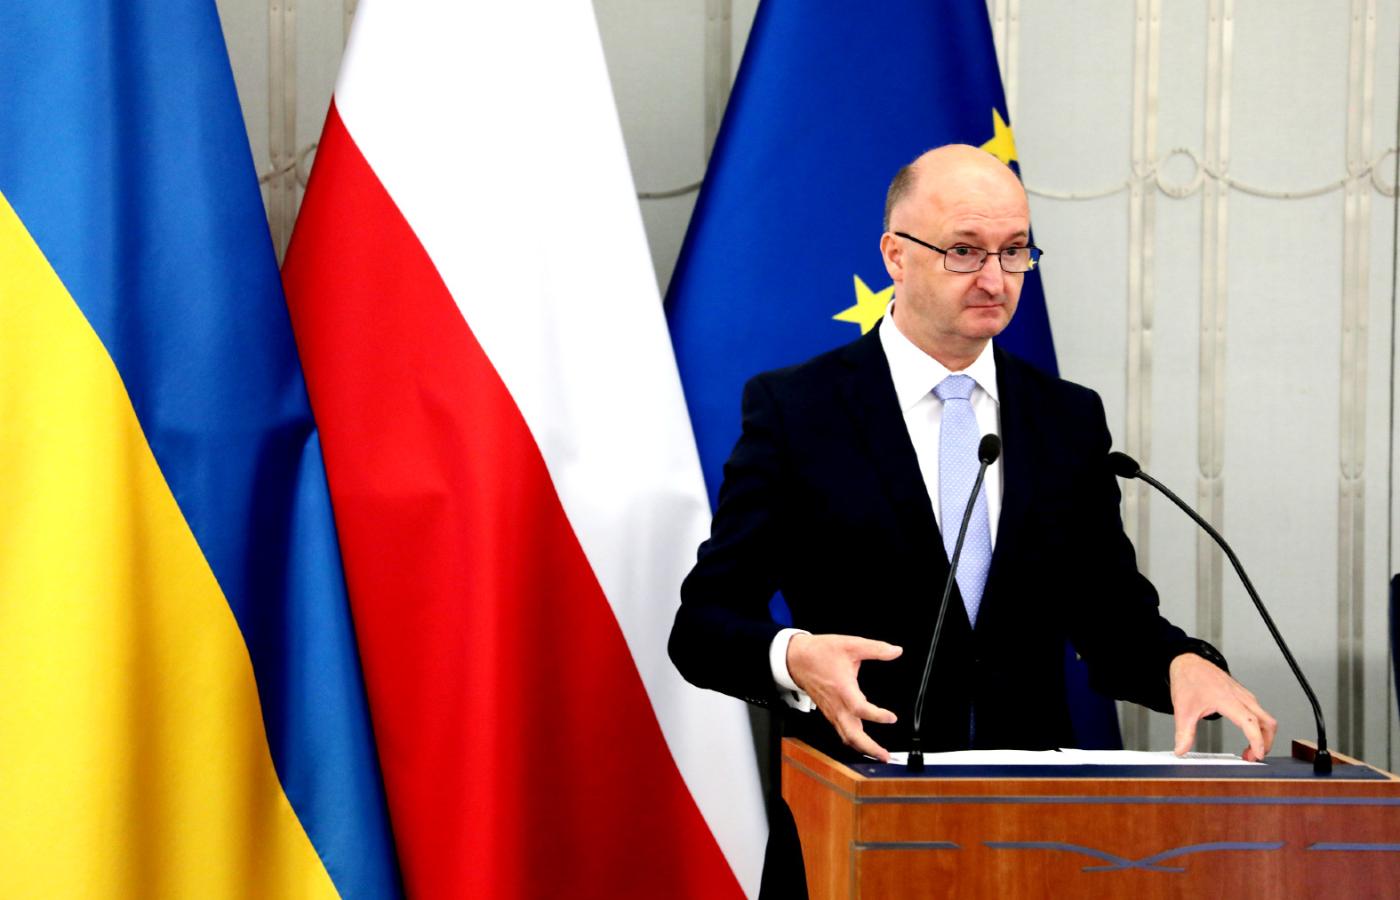 Wiceminister spraw zagranicznych odpowiedzialny za sprawy wizowe i konsularne Piotr Wawrzyk został zdymisjonowany, jednak oficjalne uzasadnienie jego odejścia pozostawia wiele wątpliwości.